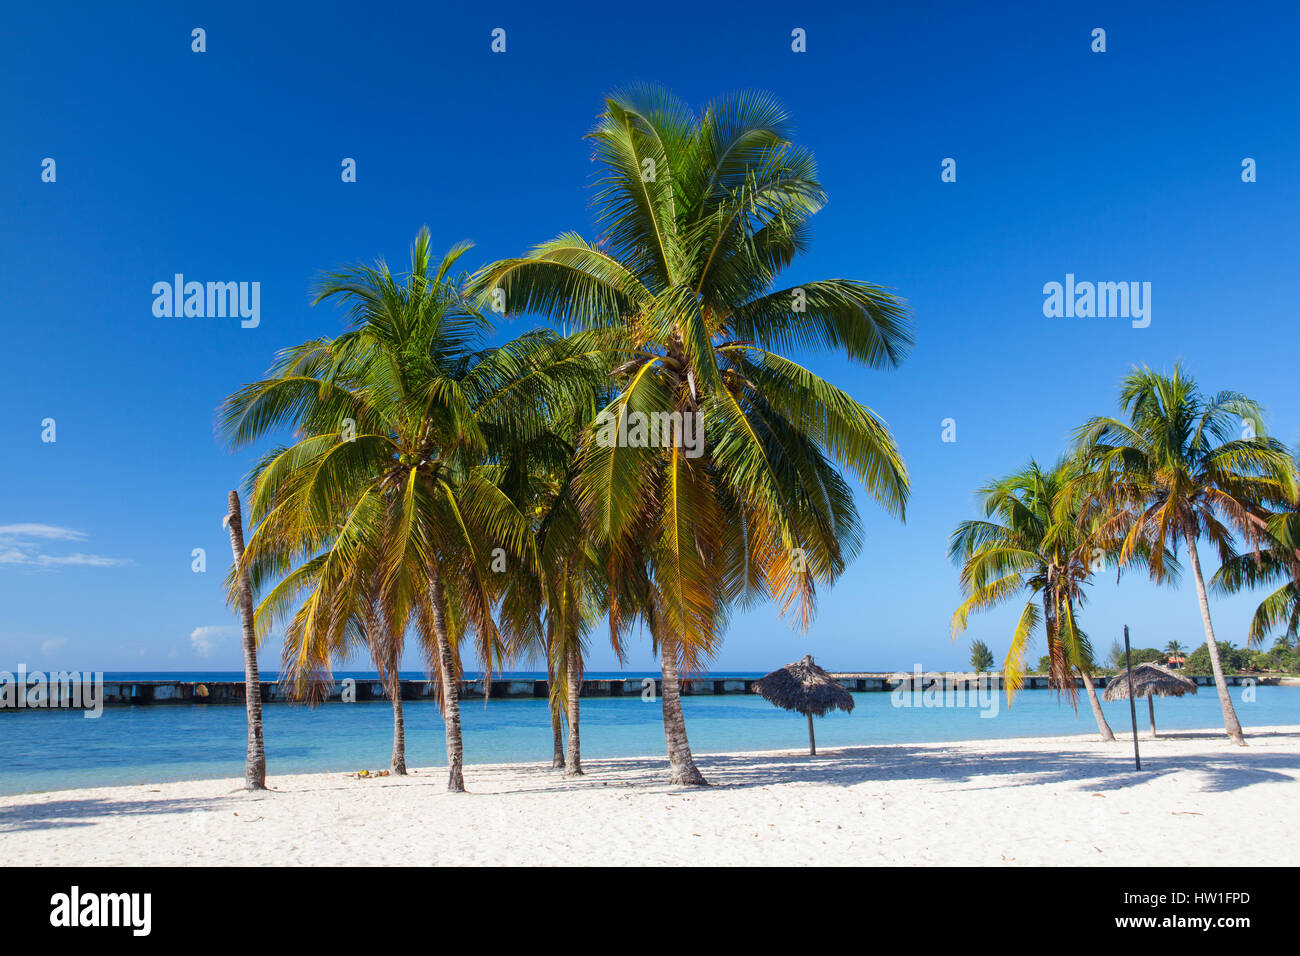 Sur la plage Playa Giron, Cuba. Cette plage est célèbre pour son rôle lors de l'invasion de la Baie des Cochons. Banque D'Images